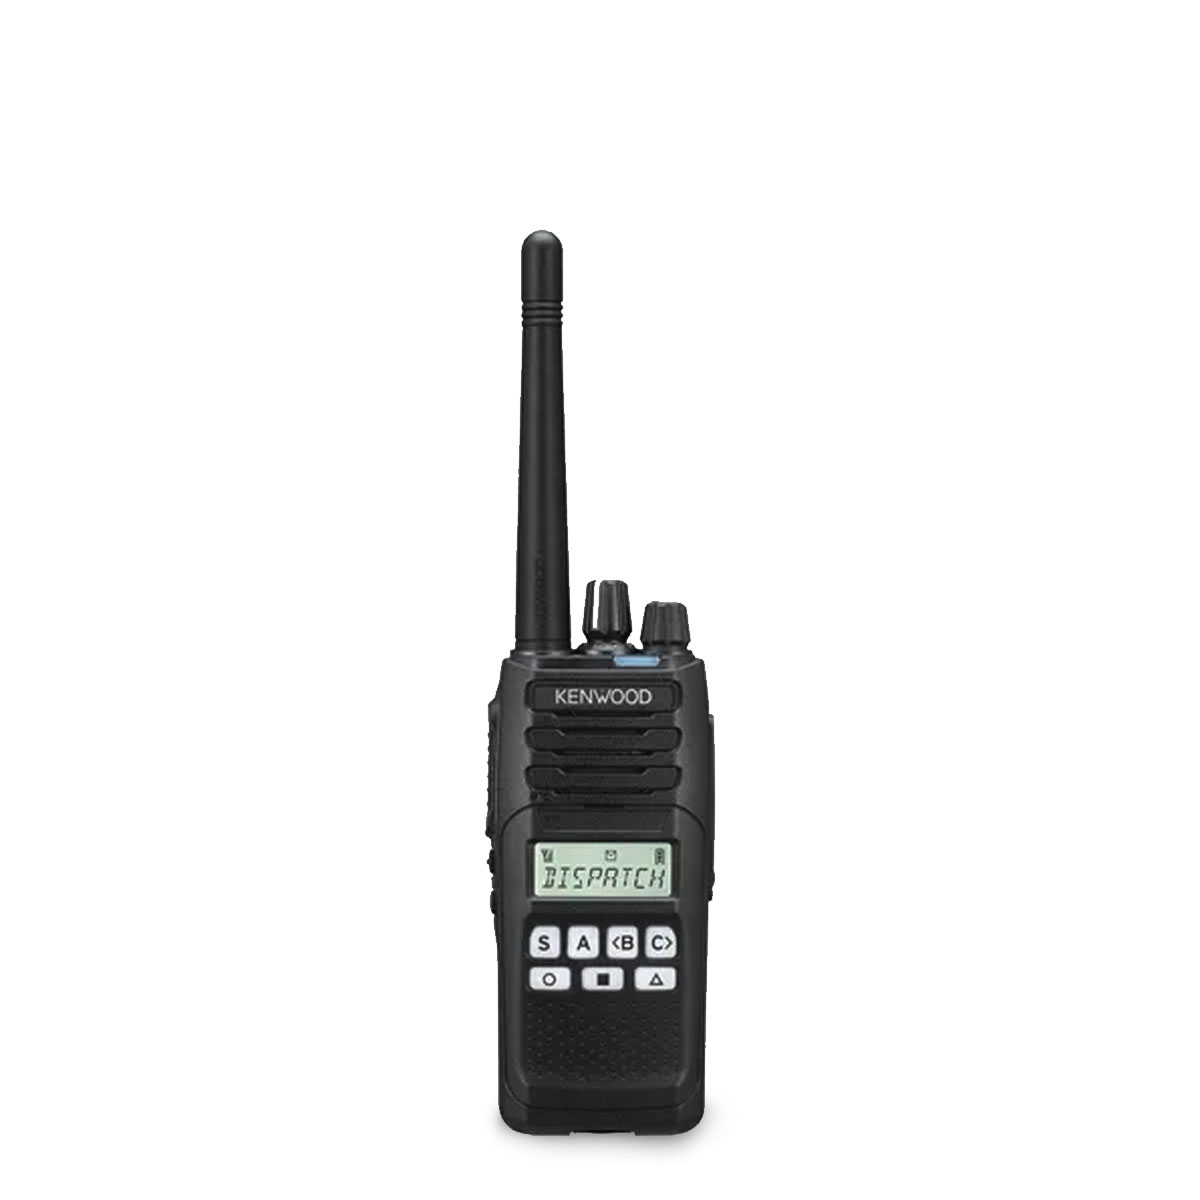 Radio KENWOOD NX-1200 Digital VHF 136-174 MHz con pantalla y teclado limitado